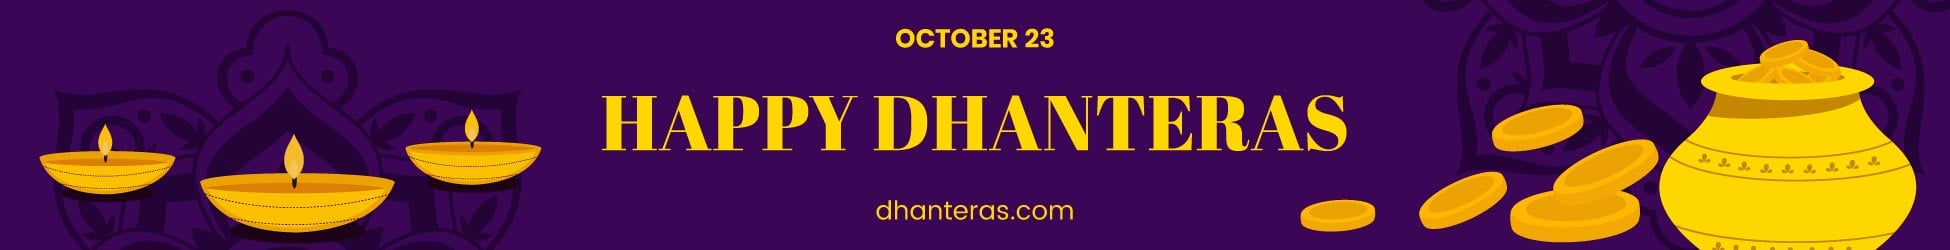 Free Dhanteras Website Banner